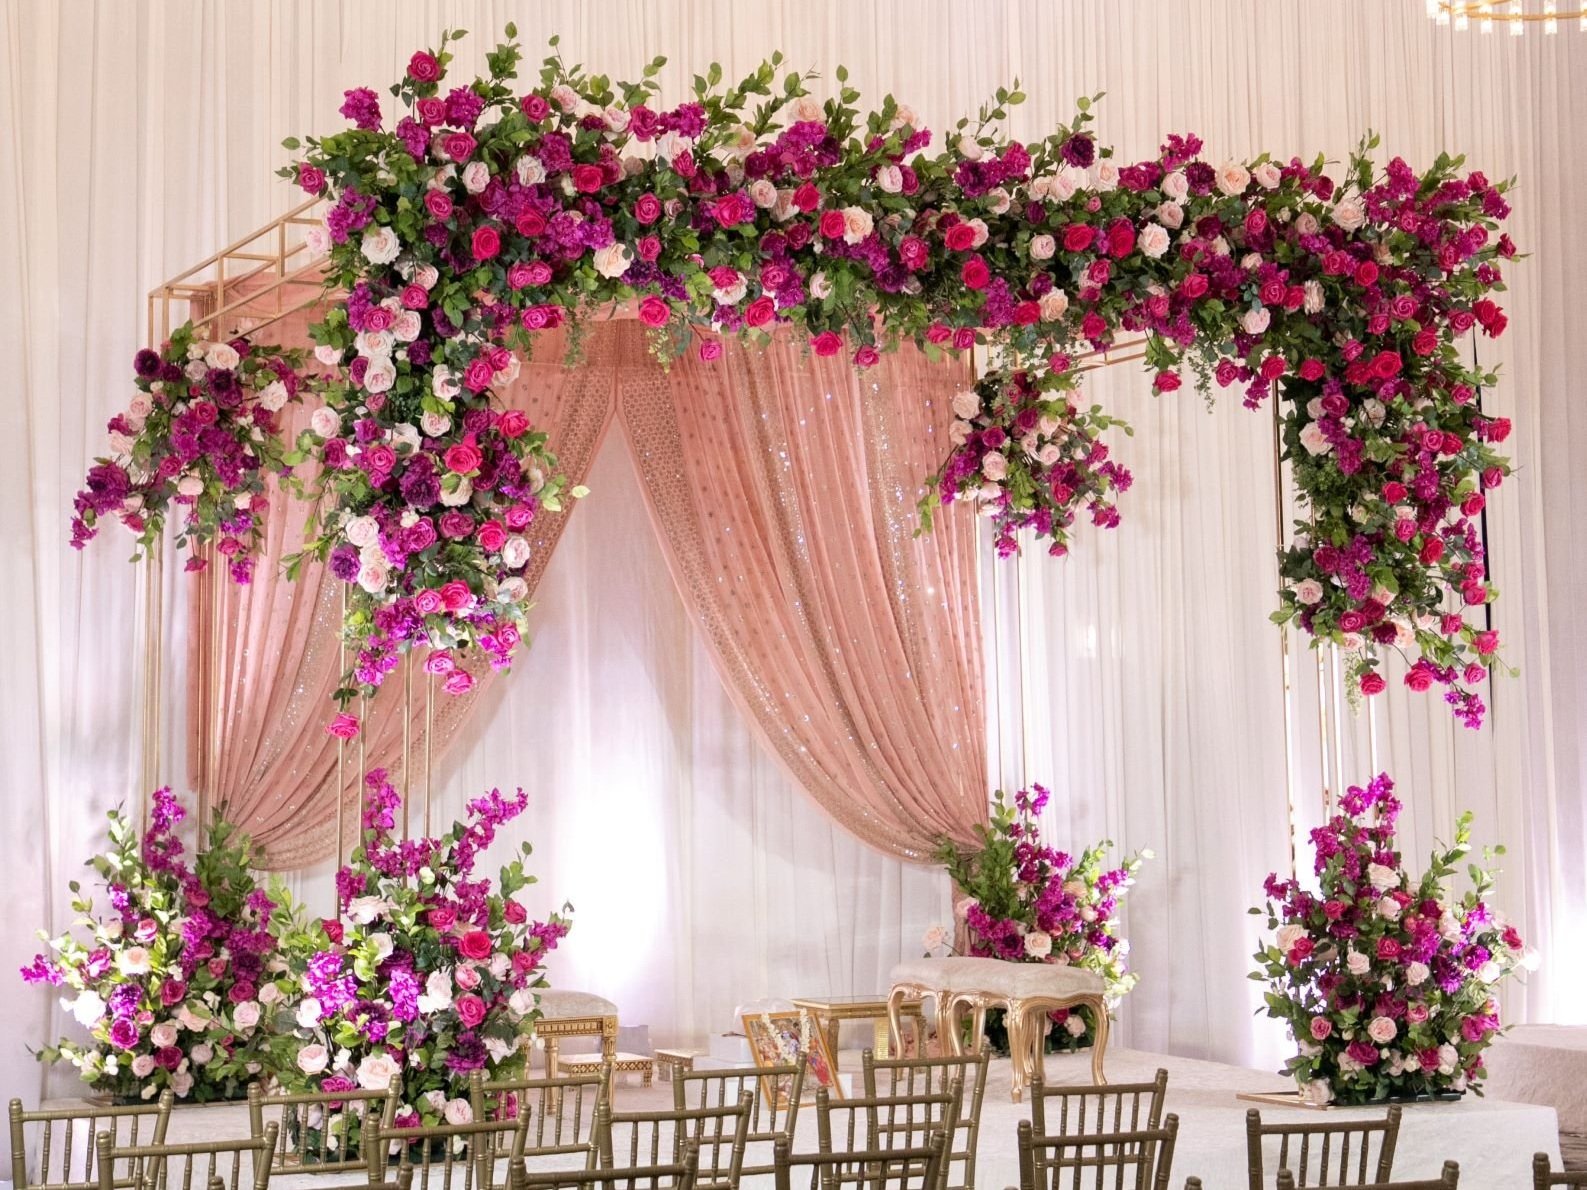 Wedding Decorators & Event Decor Experts - Siblana Events